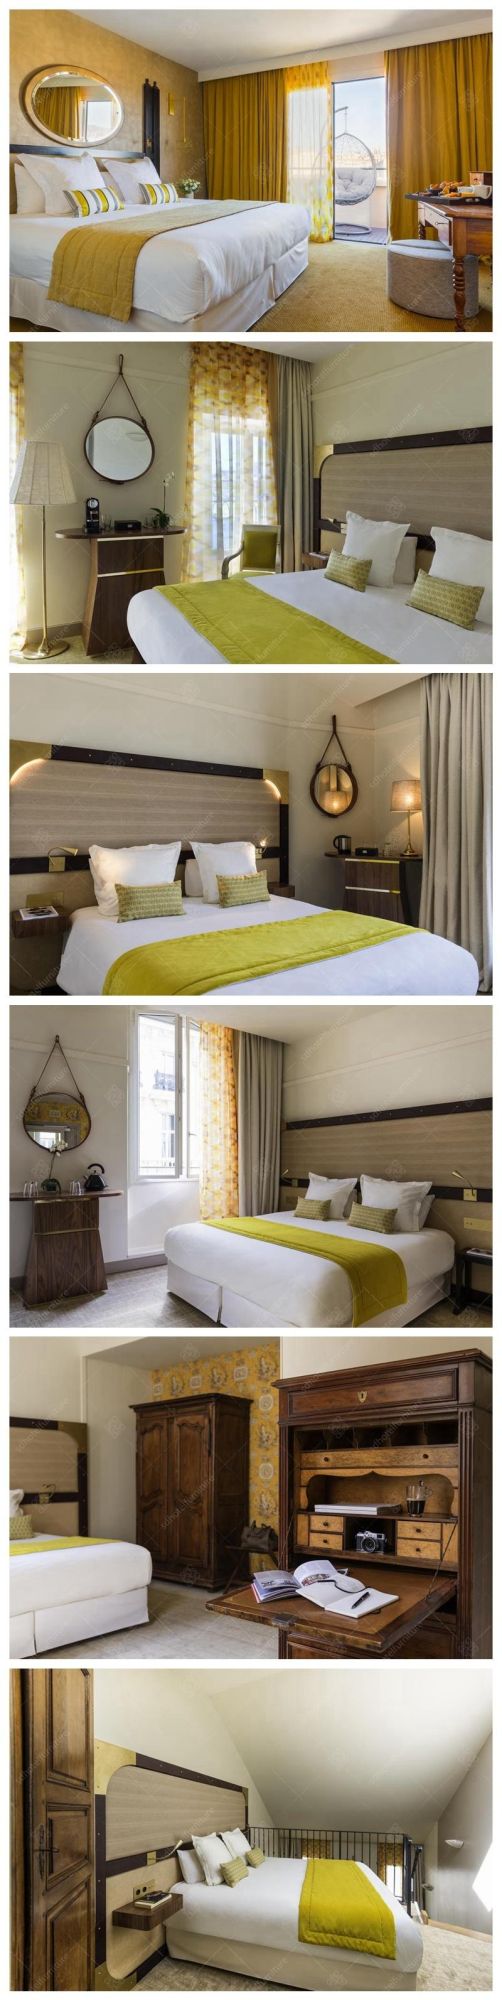 Artistical Design Modern Hotel Apartment Bedroom Furniture Sets for Sale